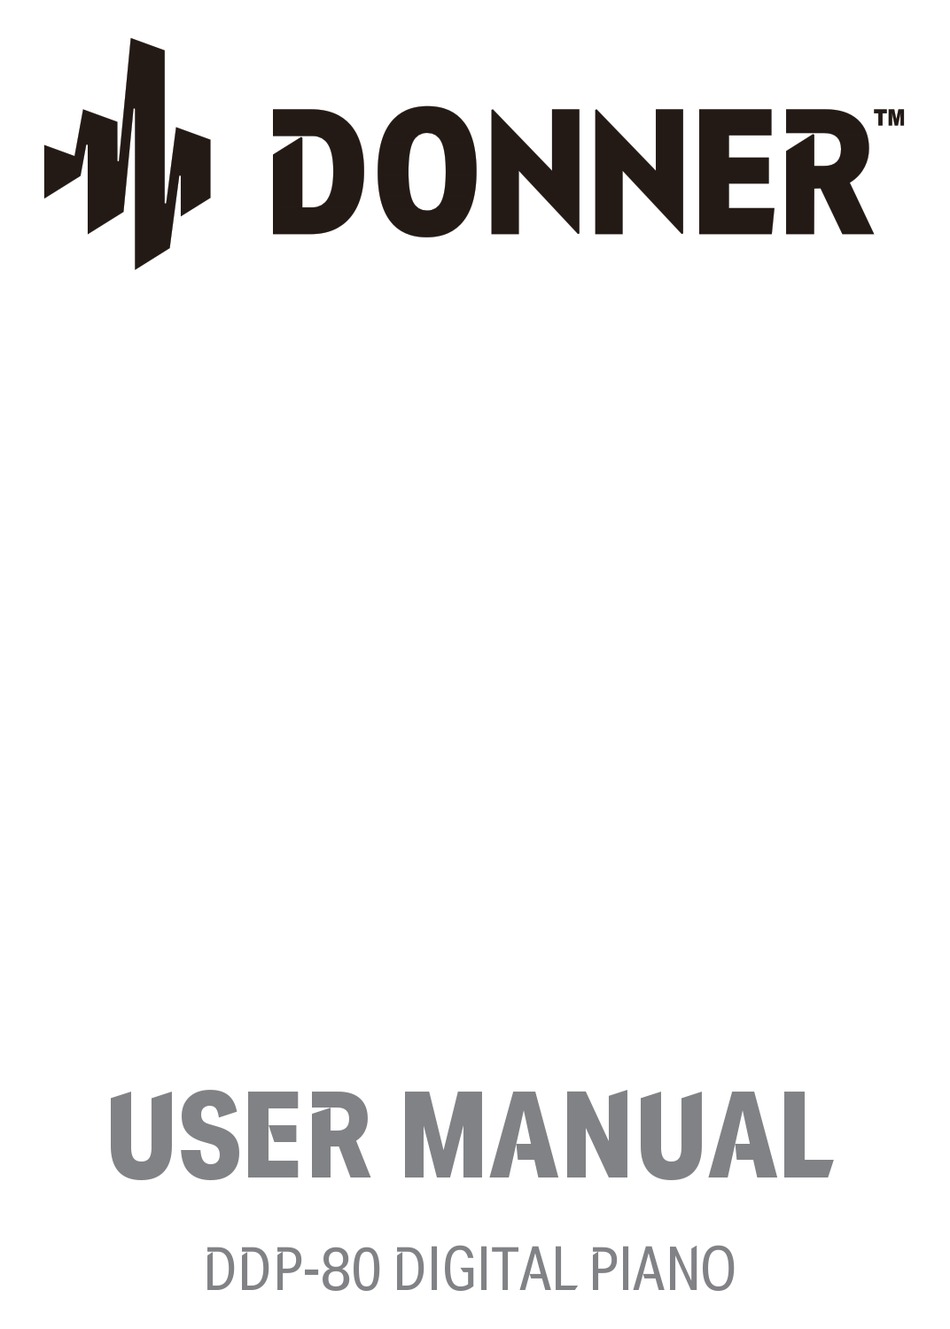 DONNER DDP-80 Plus Digital Piano User Manual